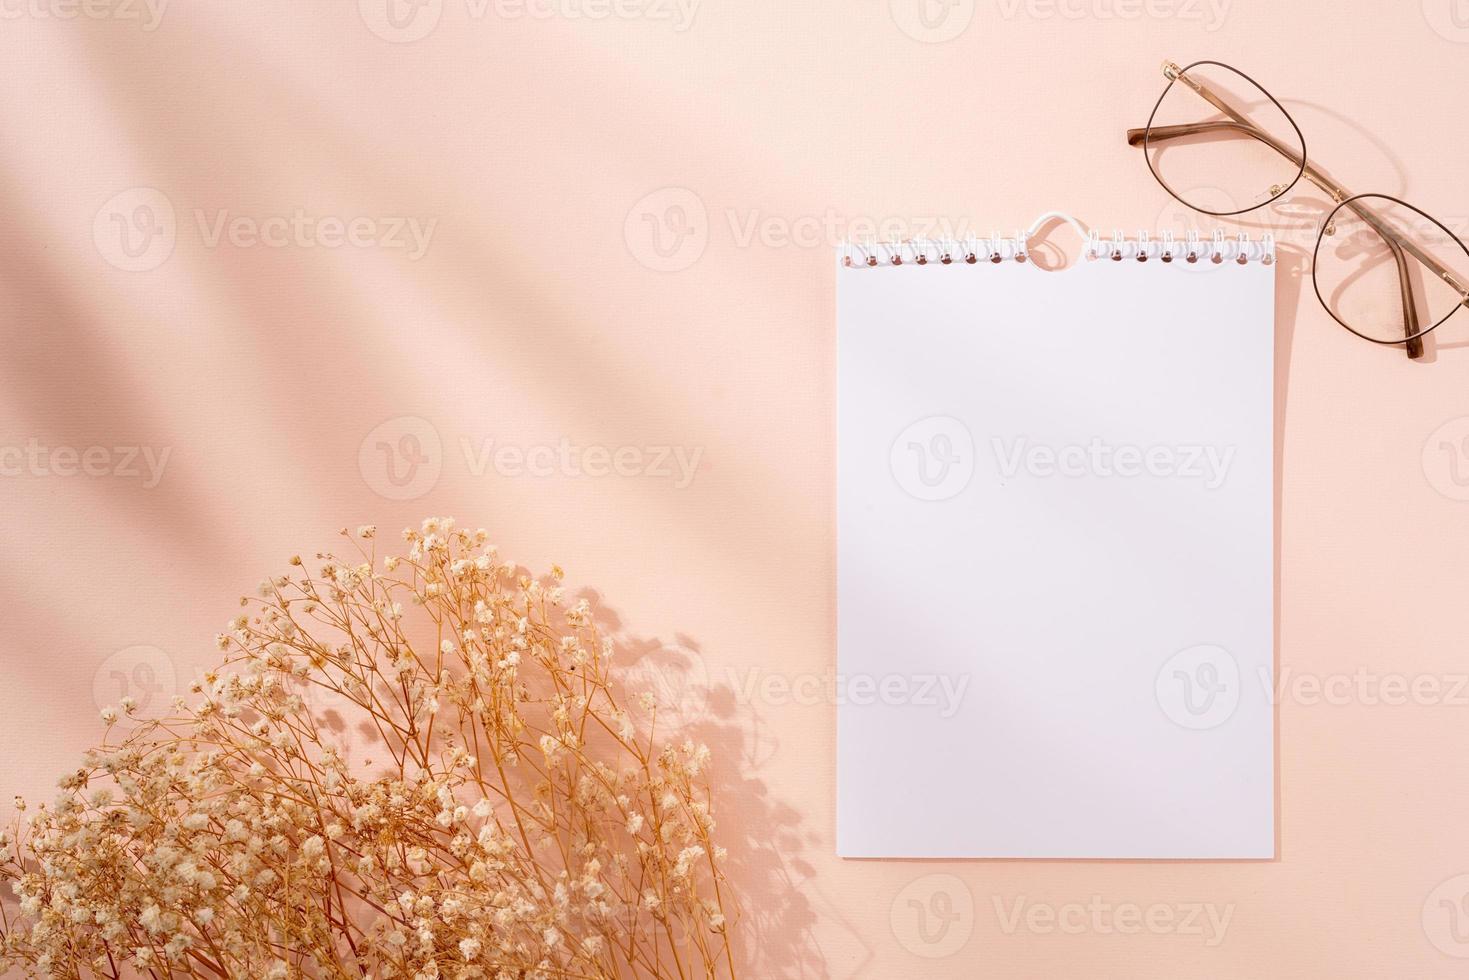 minimalistische lege spiraalkalender voor mock-up, trendy bril en bloemen op beige achtergrond foto